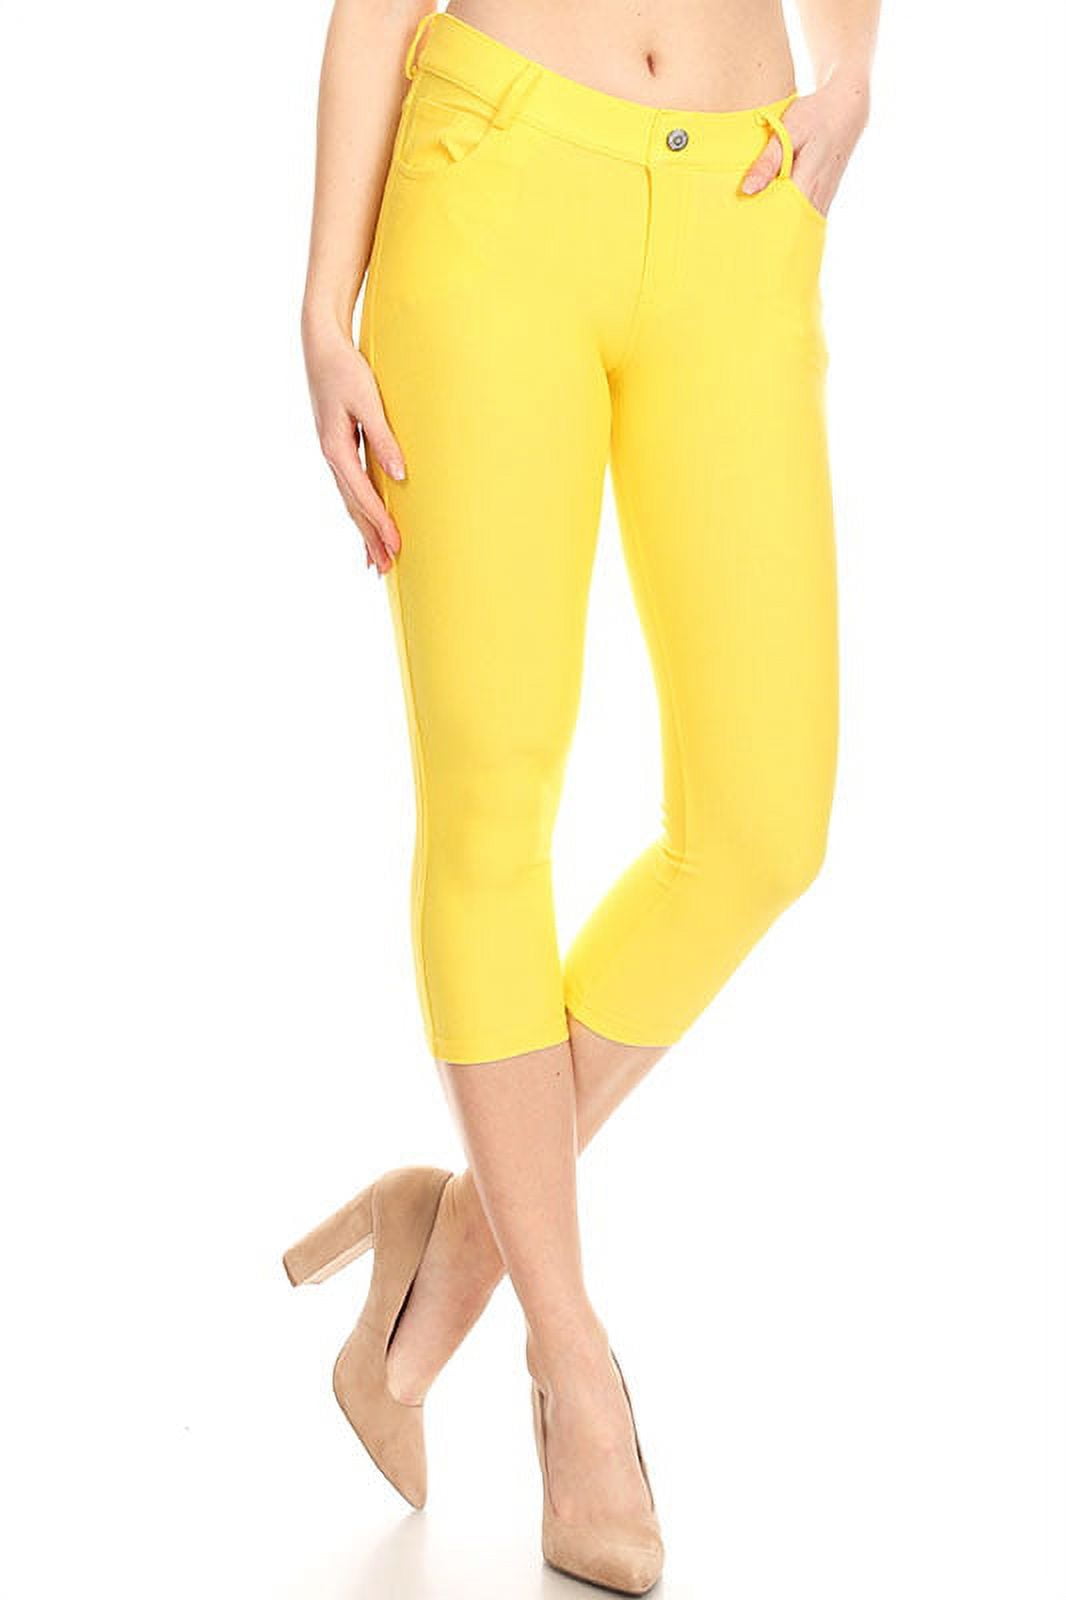 Women's Plus Size Solid High Waist Full Length Leggings - Walmart.com